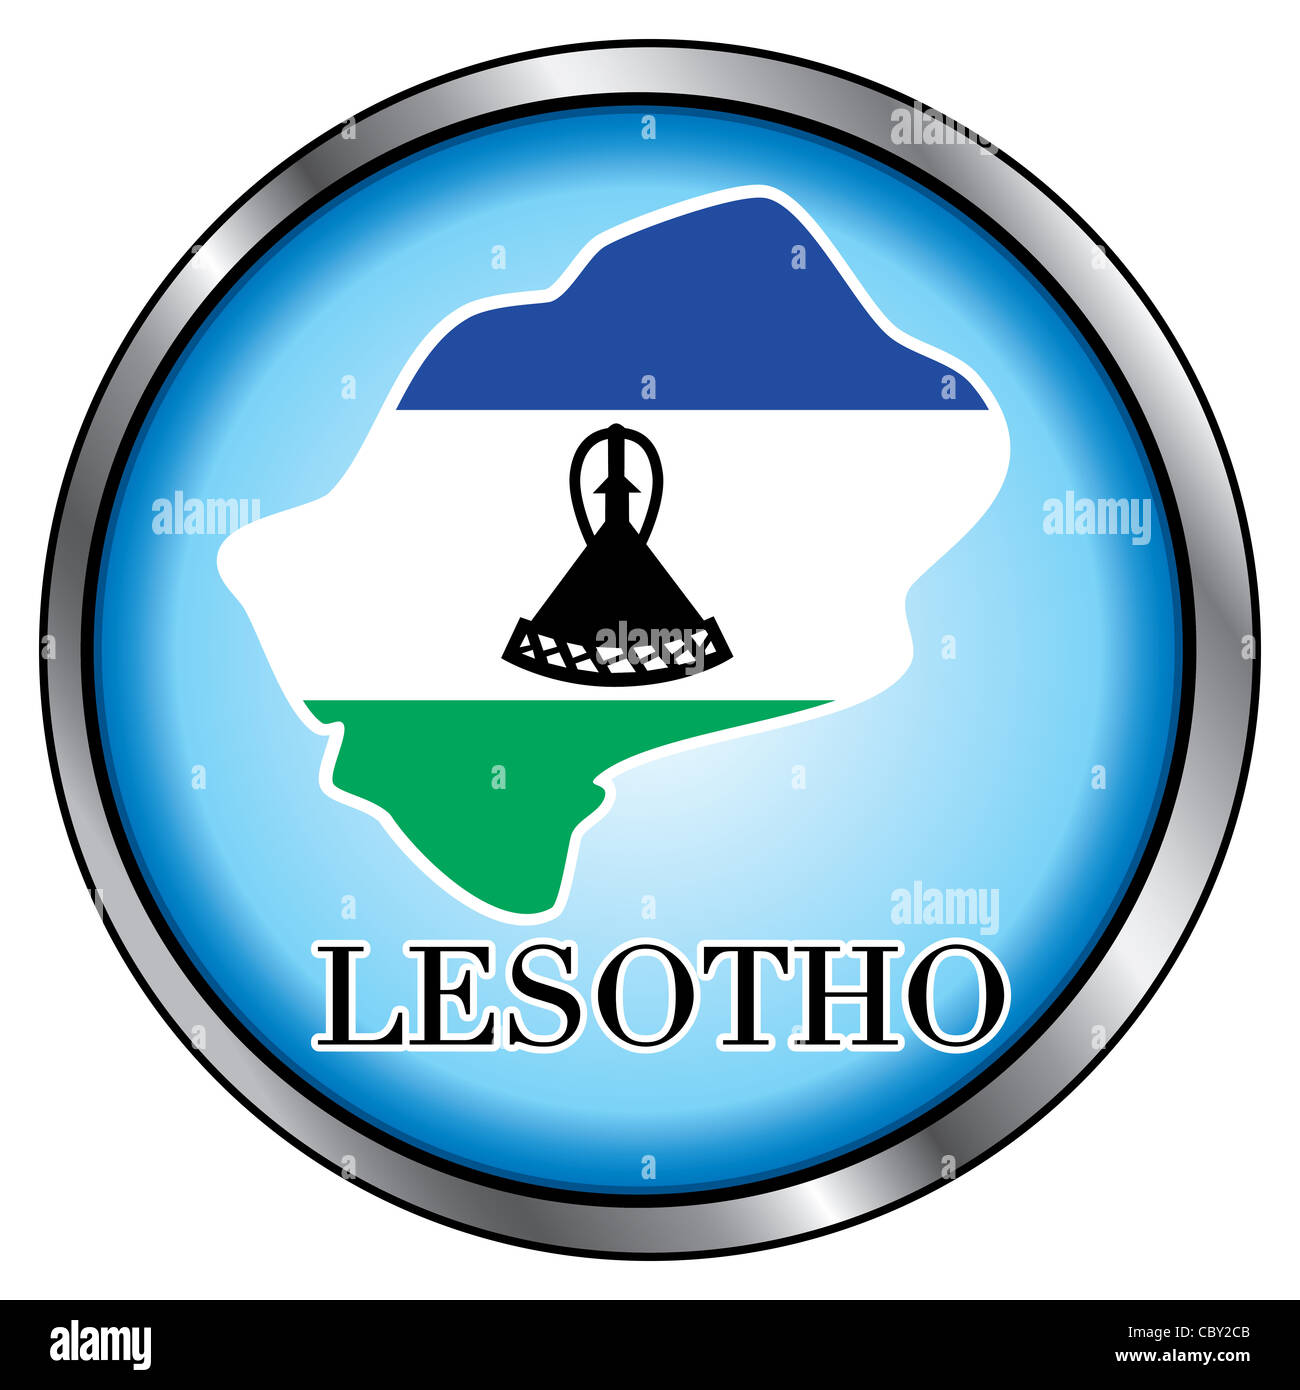 Illustrazione di vettore per il Lesotho, tasto rotondo. Foto Stock